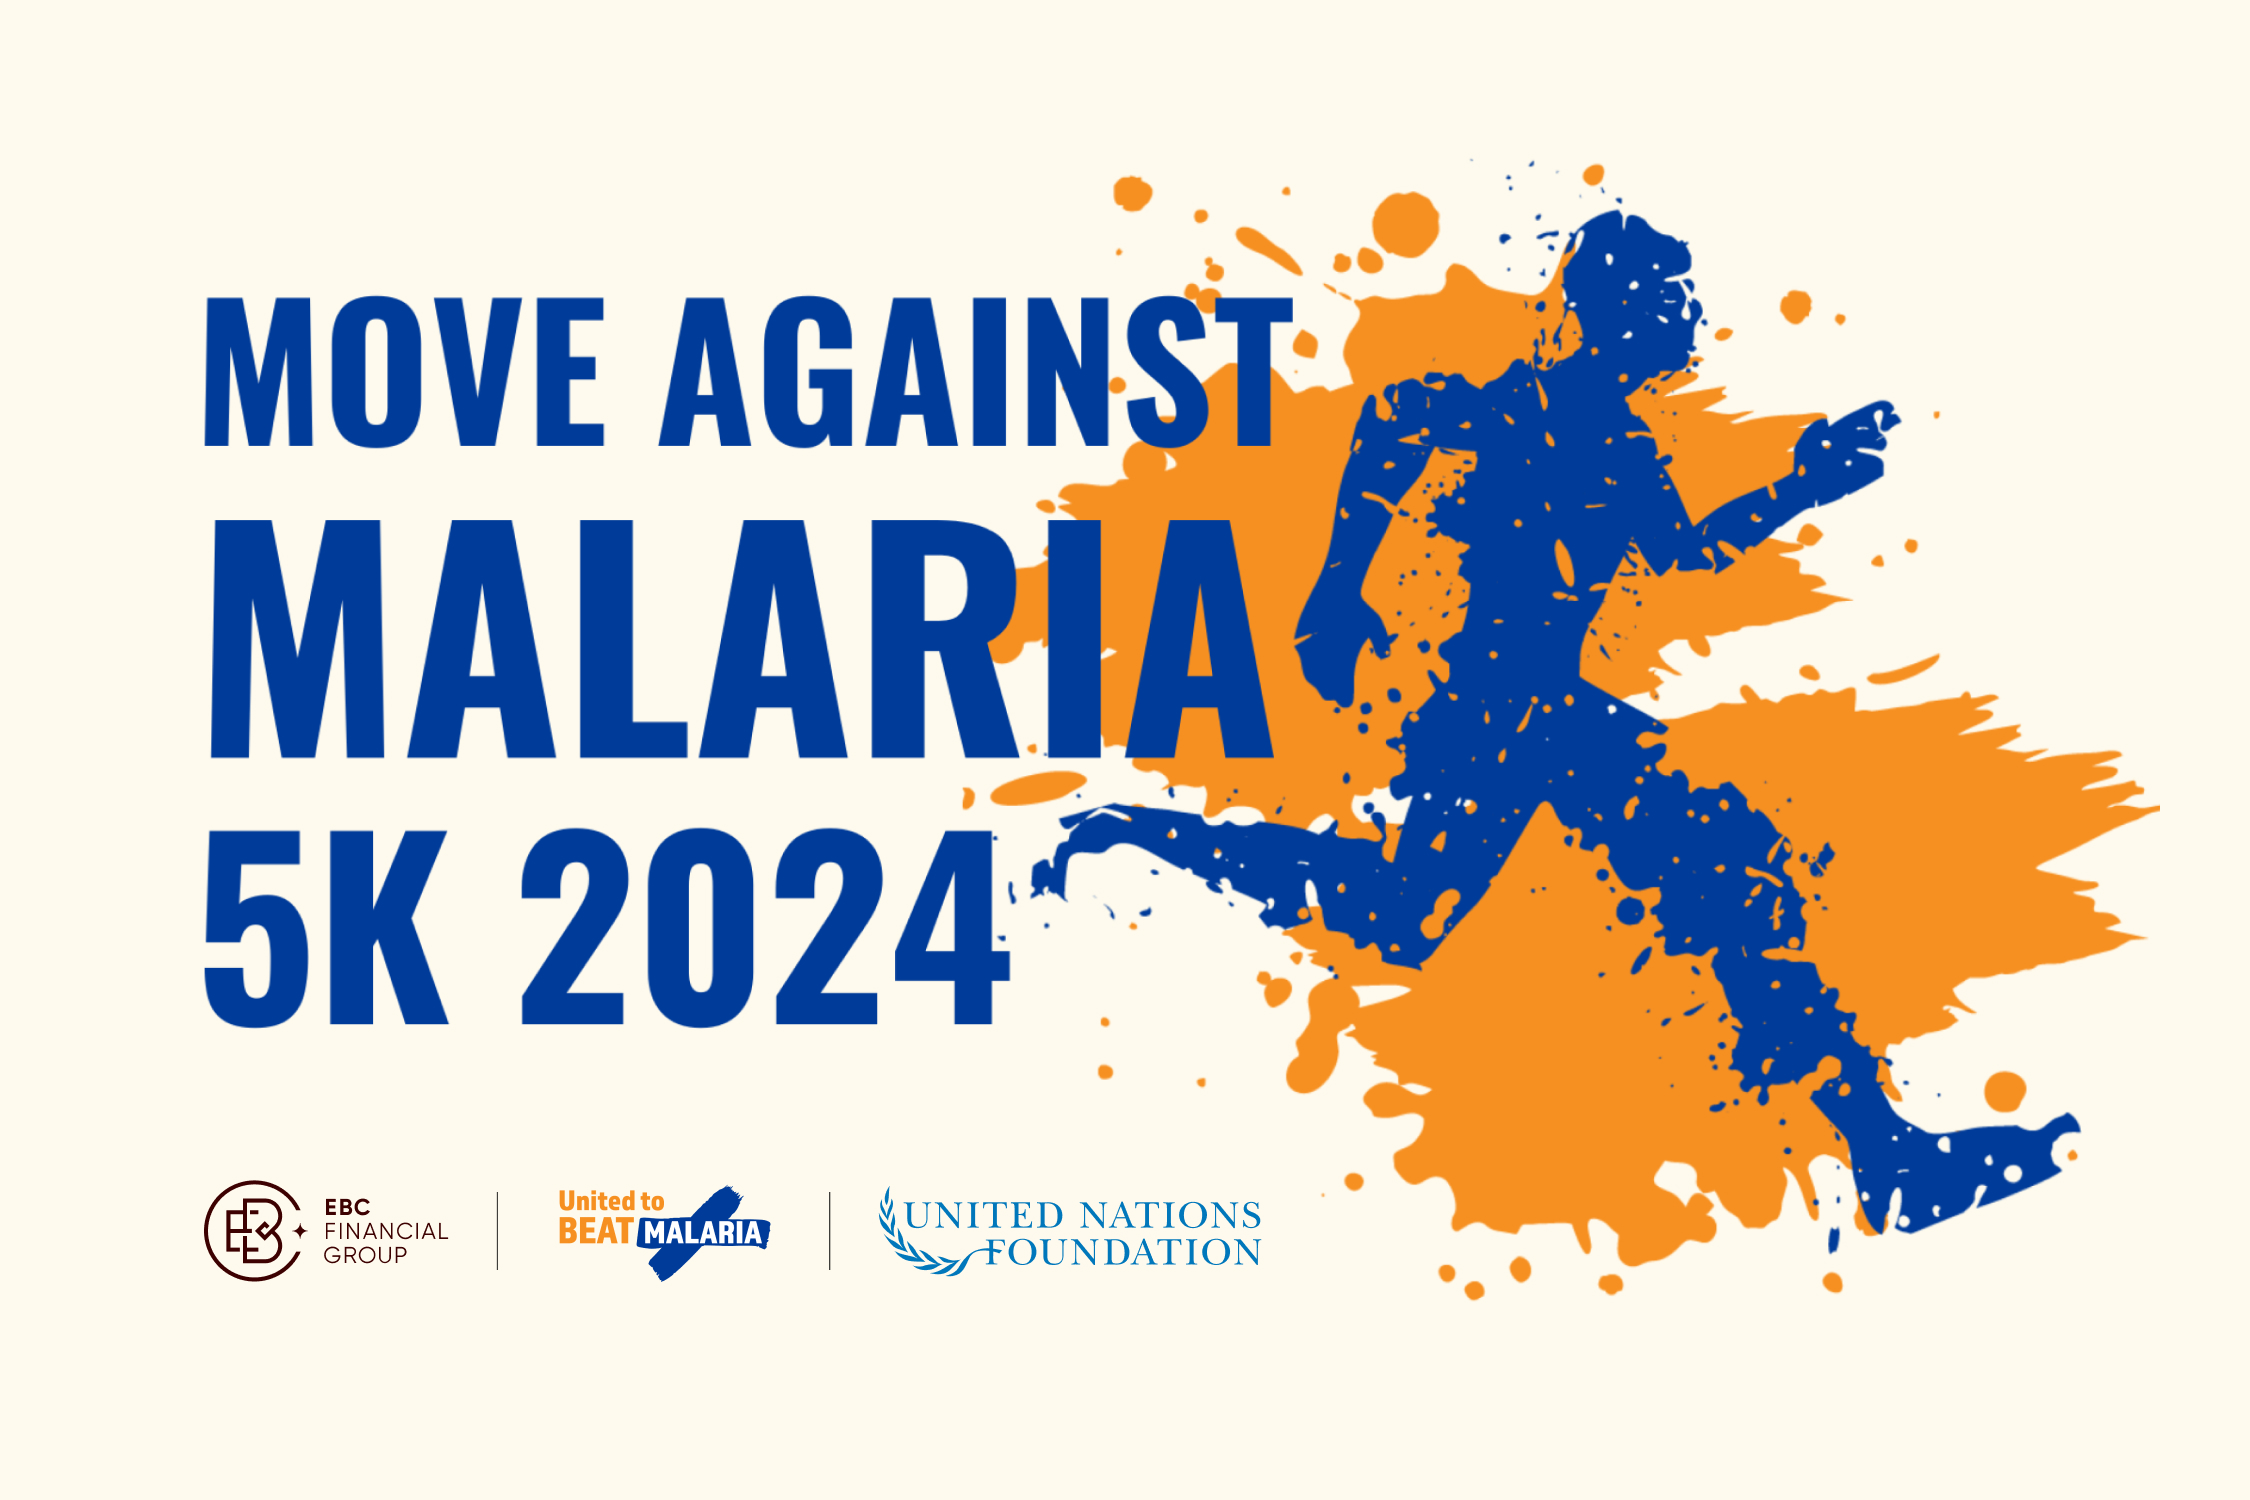 2024年4月25日から5月5日まで、世界中のサポーターと一緒にムーブ・アゲインスト・マラリアに参加されたい。このバーチャルイベントは、命を救うマラリア治療ツールとプログラムを支援するための意識と資金を高めるためのイベントである。